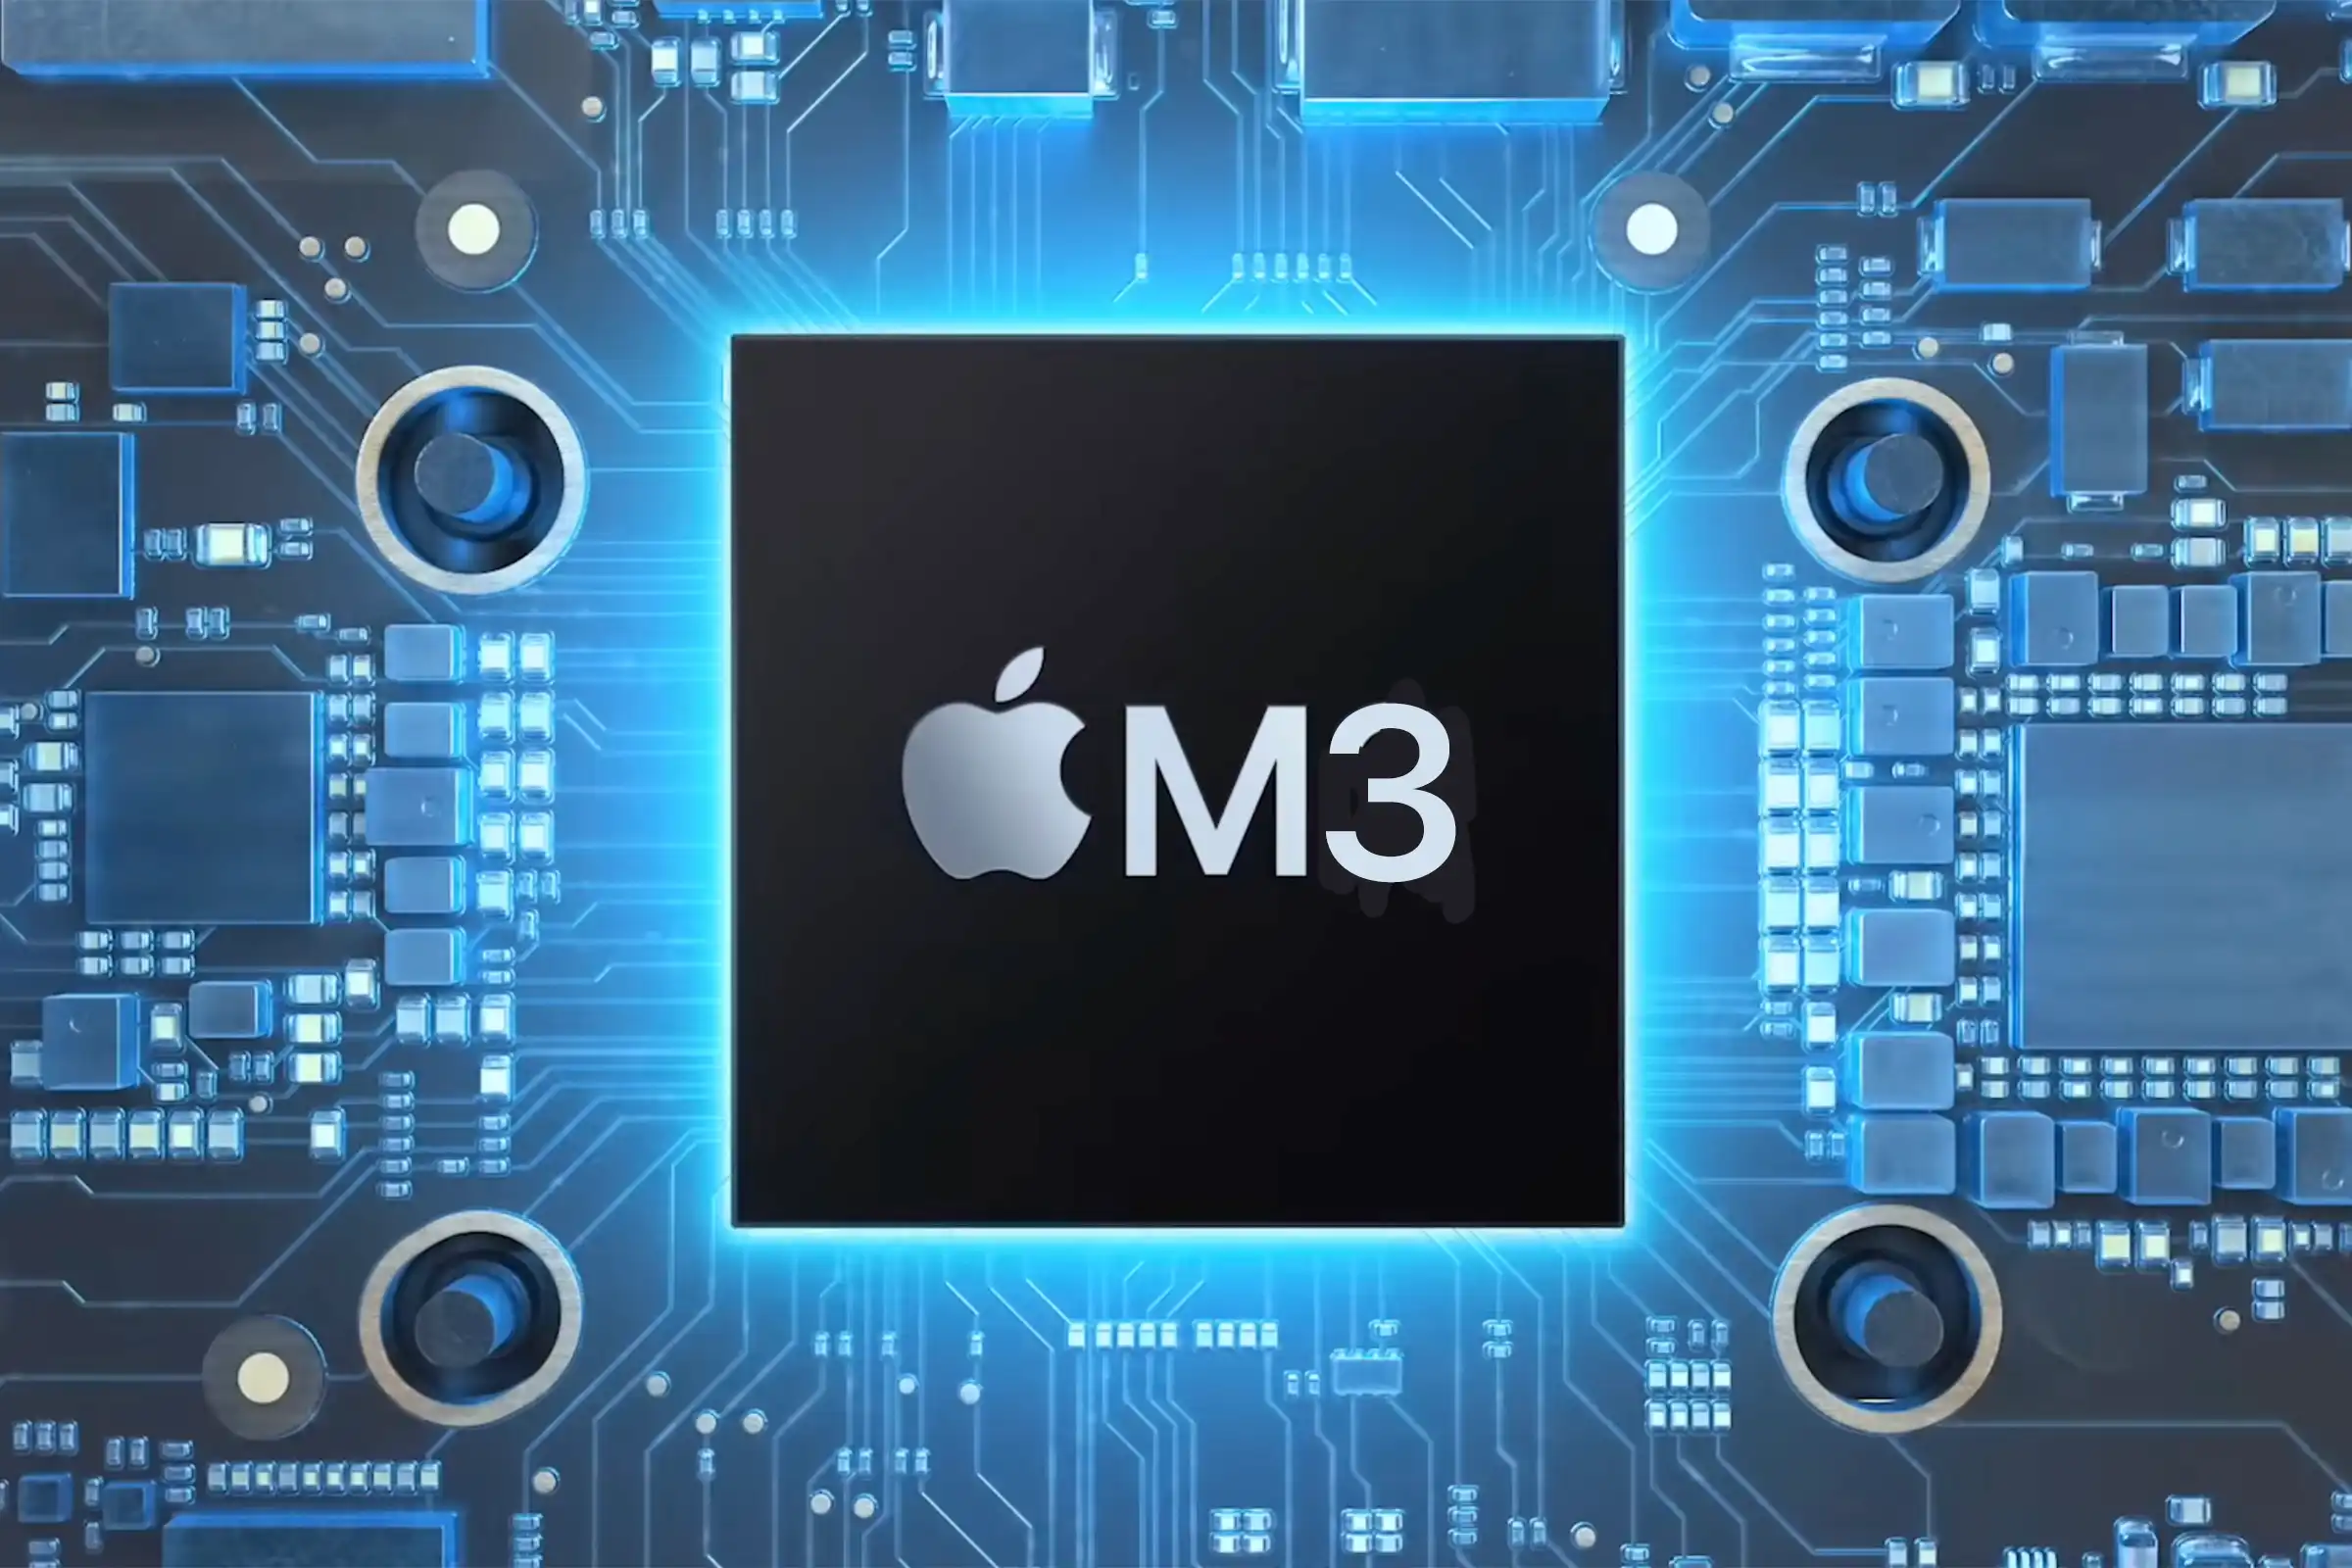 Apple enthüllt neue MacBook Air Laptops mit M3 Chip